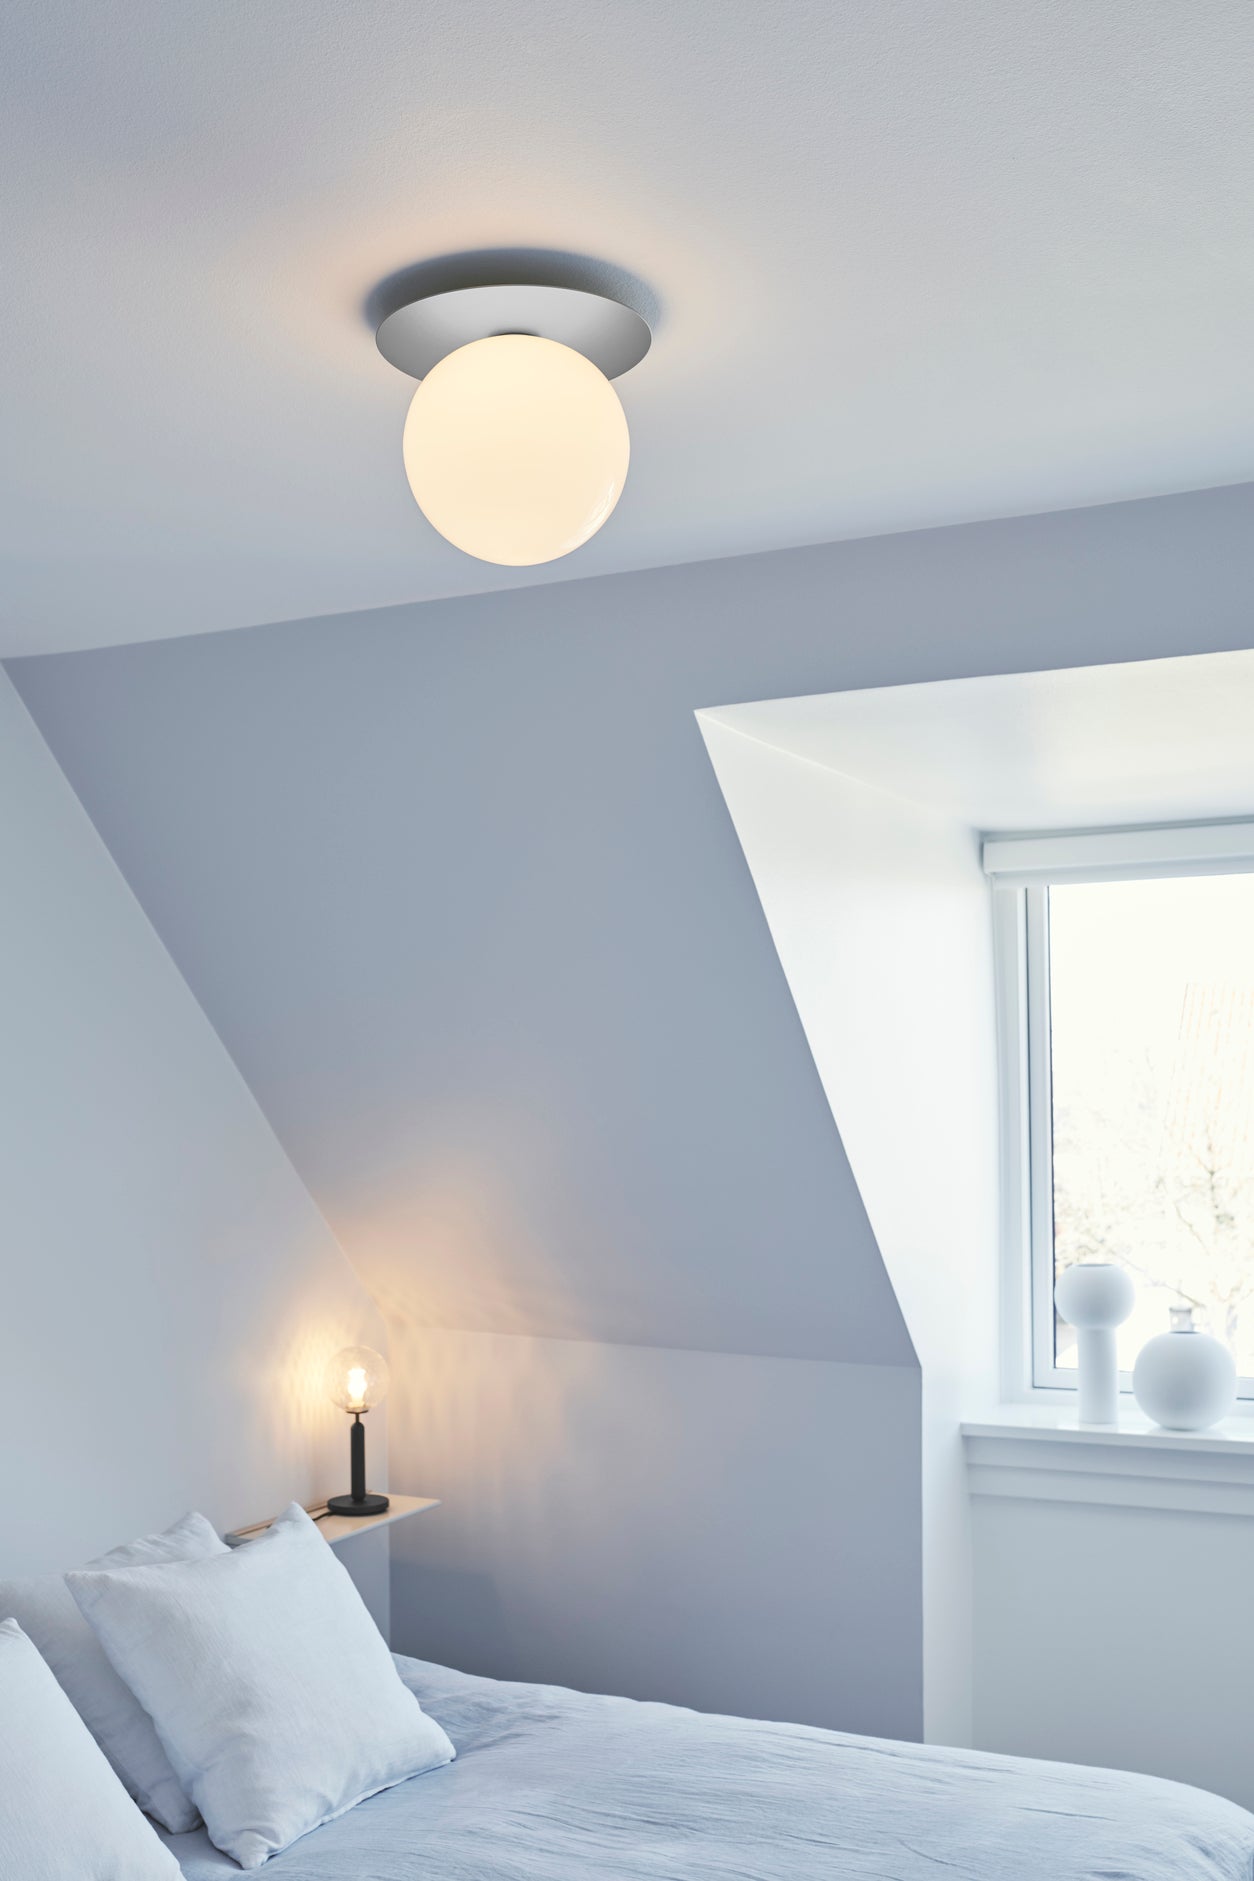 Loftlampe med lampeskærm af opalglas og sølvfarvet fatning, i soveværelse